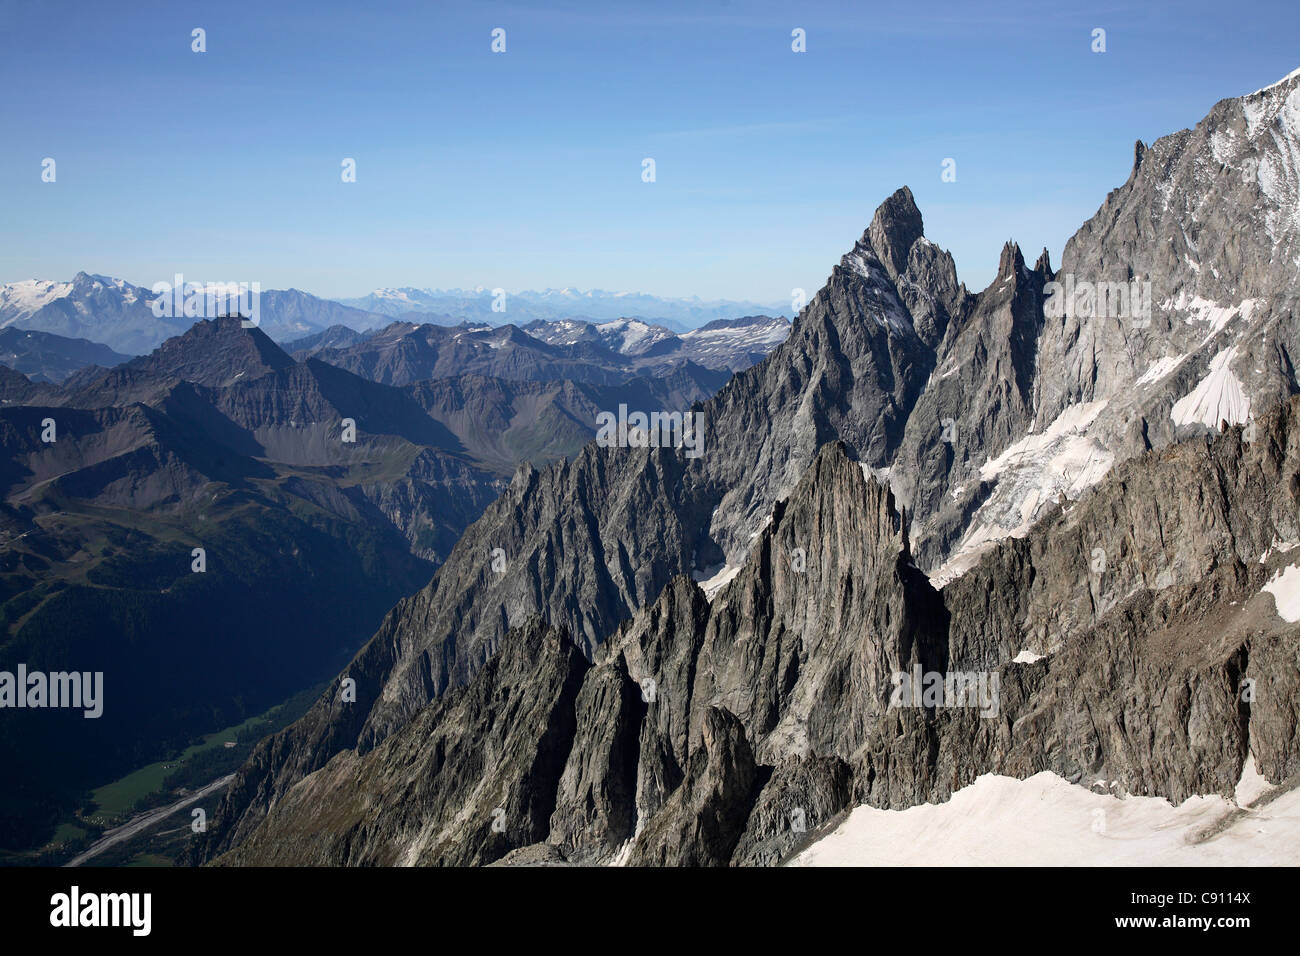 Der Mont-Blanc-Massiv ist beliebt als Standort für das Bergsteigen, Wandern, Skifahren und Snowboarden Winter- und Sommersport. Stockfoto